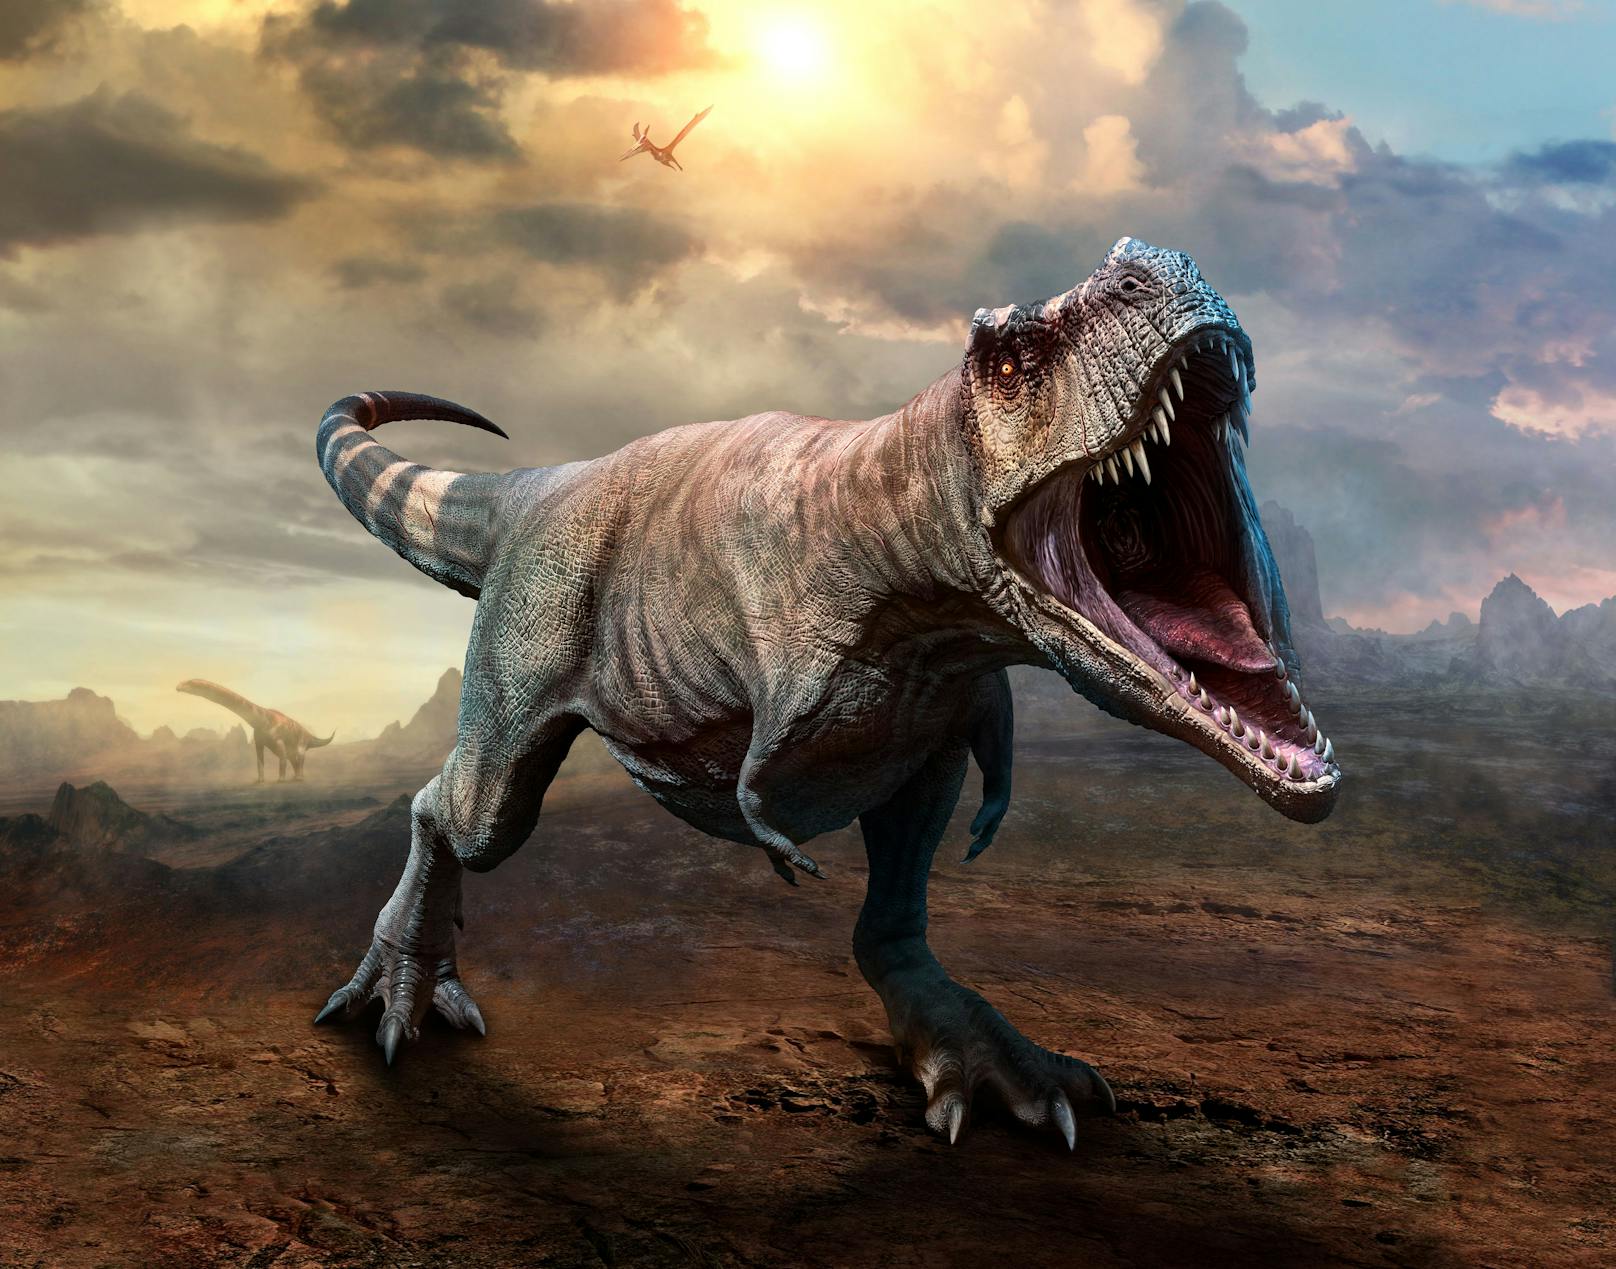 Im Vergleich zu seinem Körper und seinen gefährlichen Zähnen hatte der Tyrannosaurus erstaunlich mickrige Arme.